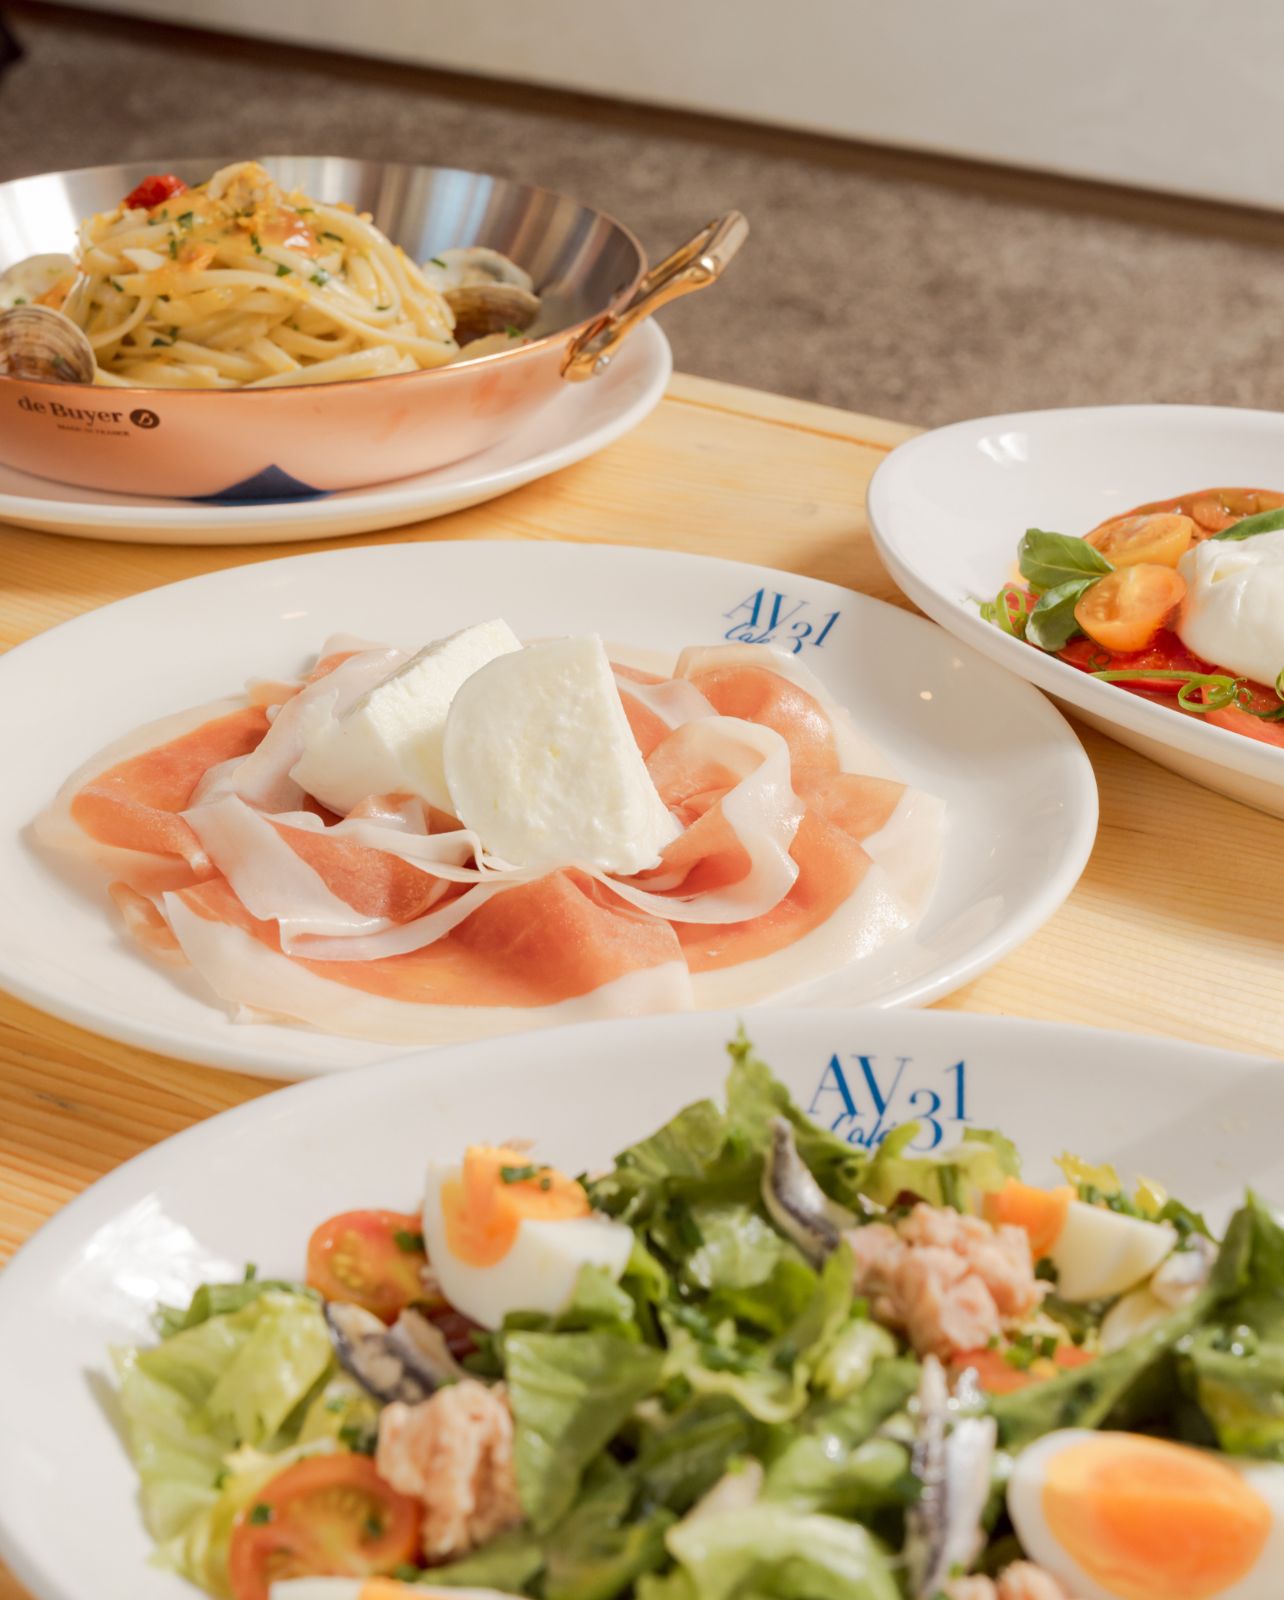 A spread of dishes including Escarole Salad, Linguine Alle Vongole con Clams and Mozzarella with Prosciutto